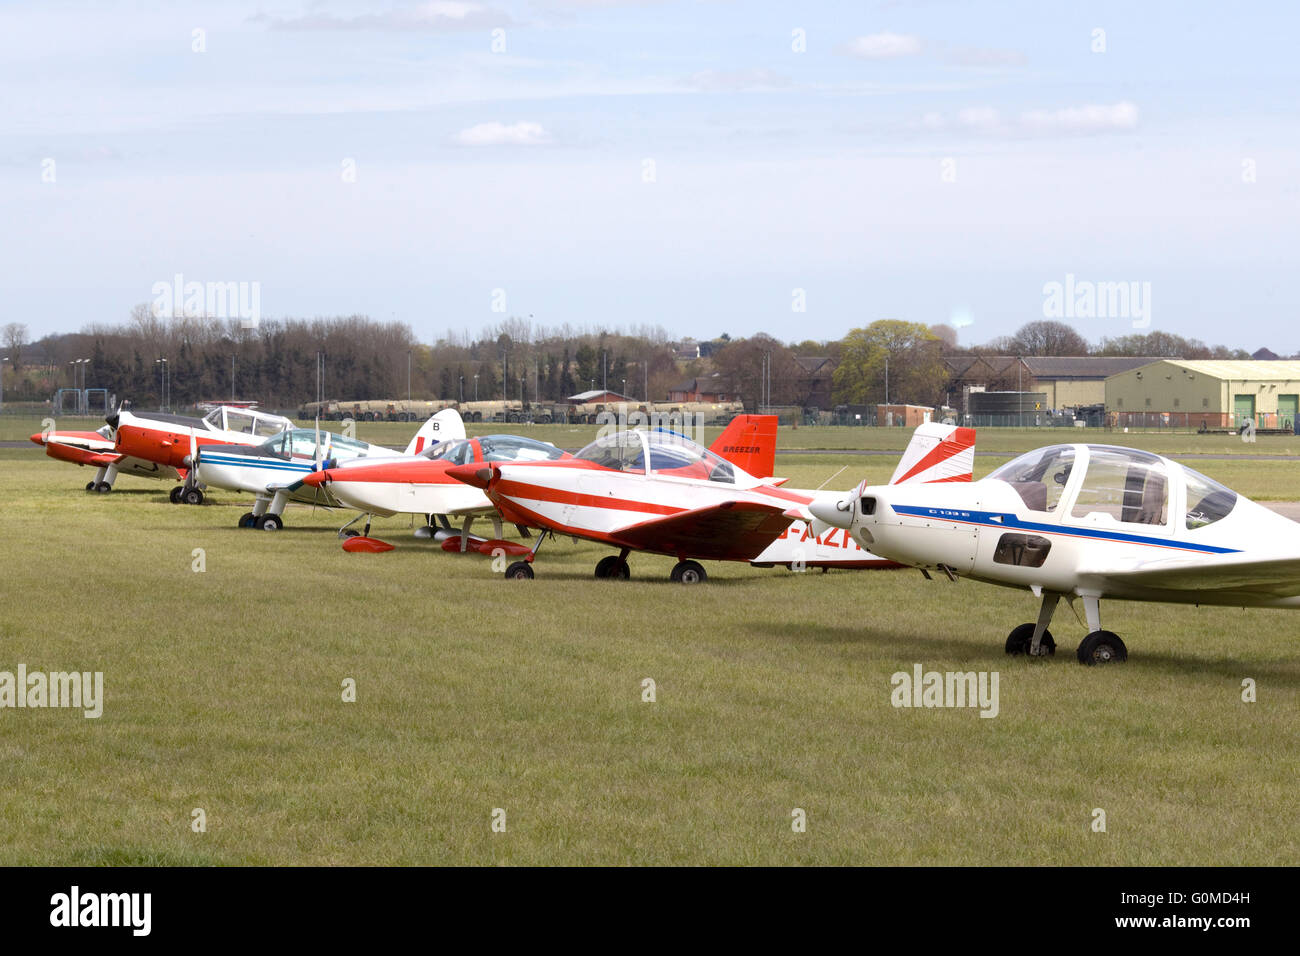 Los aviones de ala fija Single-Engine aparcado en el campo Foto de stock